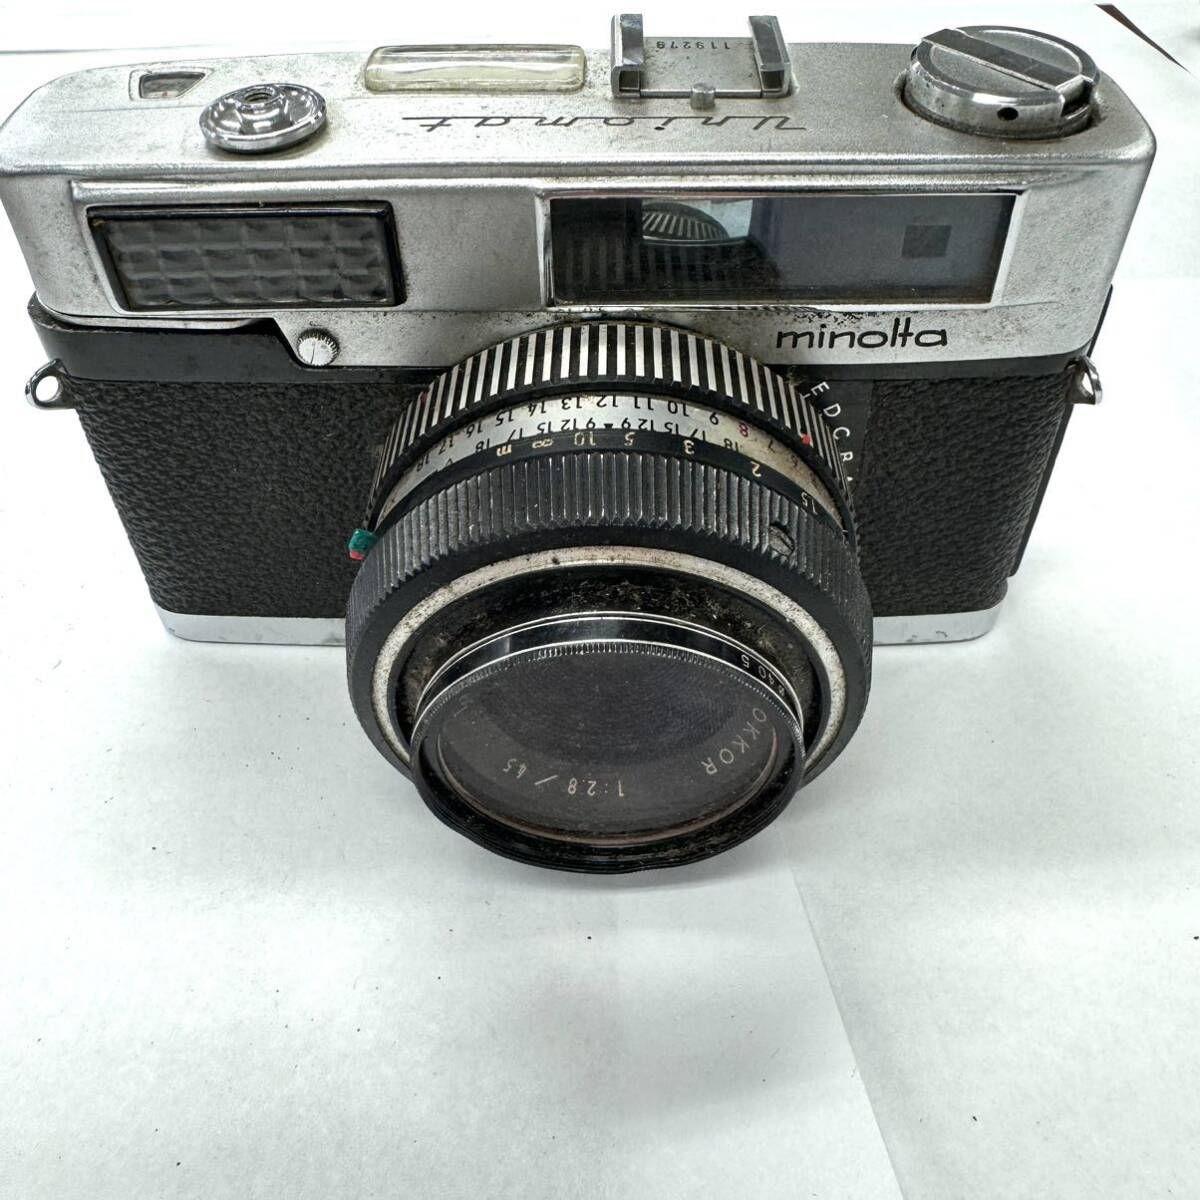 A0038 カメラ まとめ フィルムカメラ ミノルタ minolta SR-7 1:4 f=35mm PENTAX S2 1:2/55 minolta Uniomat ジャンク品 中古 訳ありの画像9